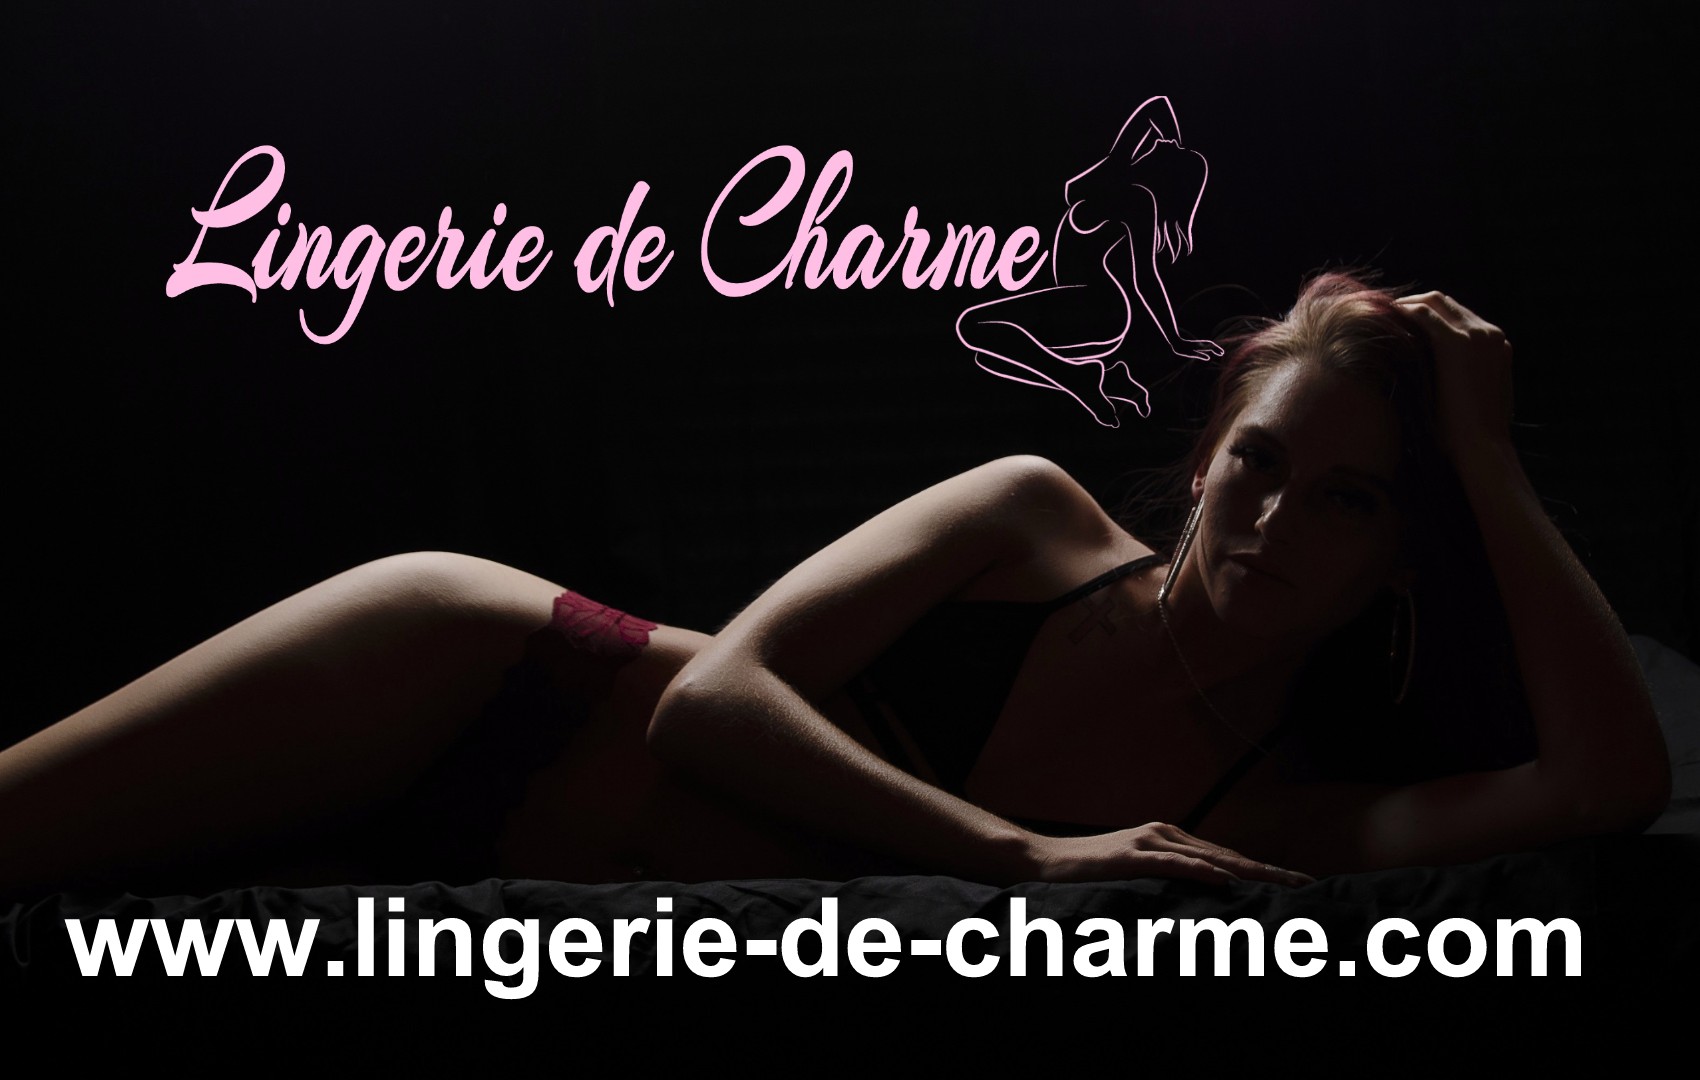 LINGERIE DE CHARME SAINT-ANGEAU 16 - LINGERIE SEXY SAINT-ANGEAU 16